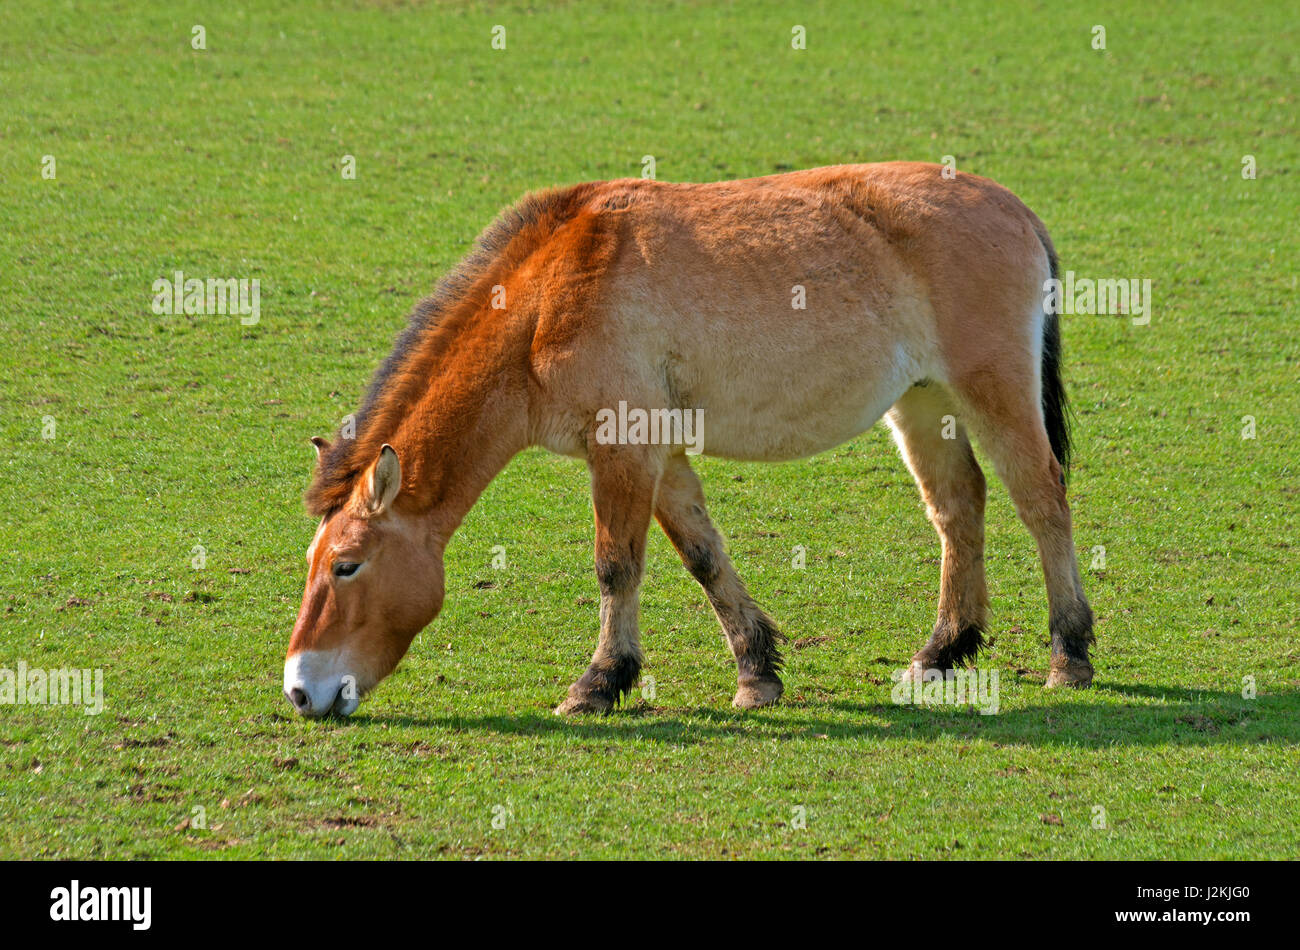 Onager, Equus Africanus, North Africa Captive Stock Photo